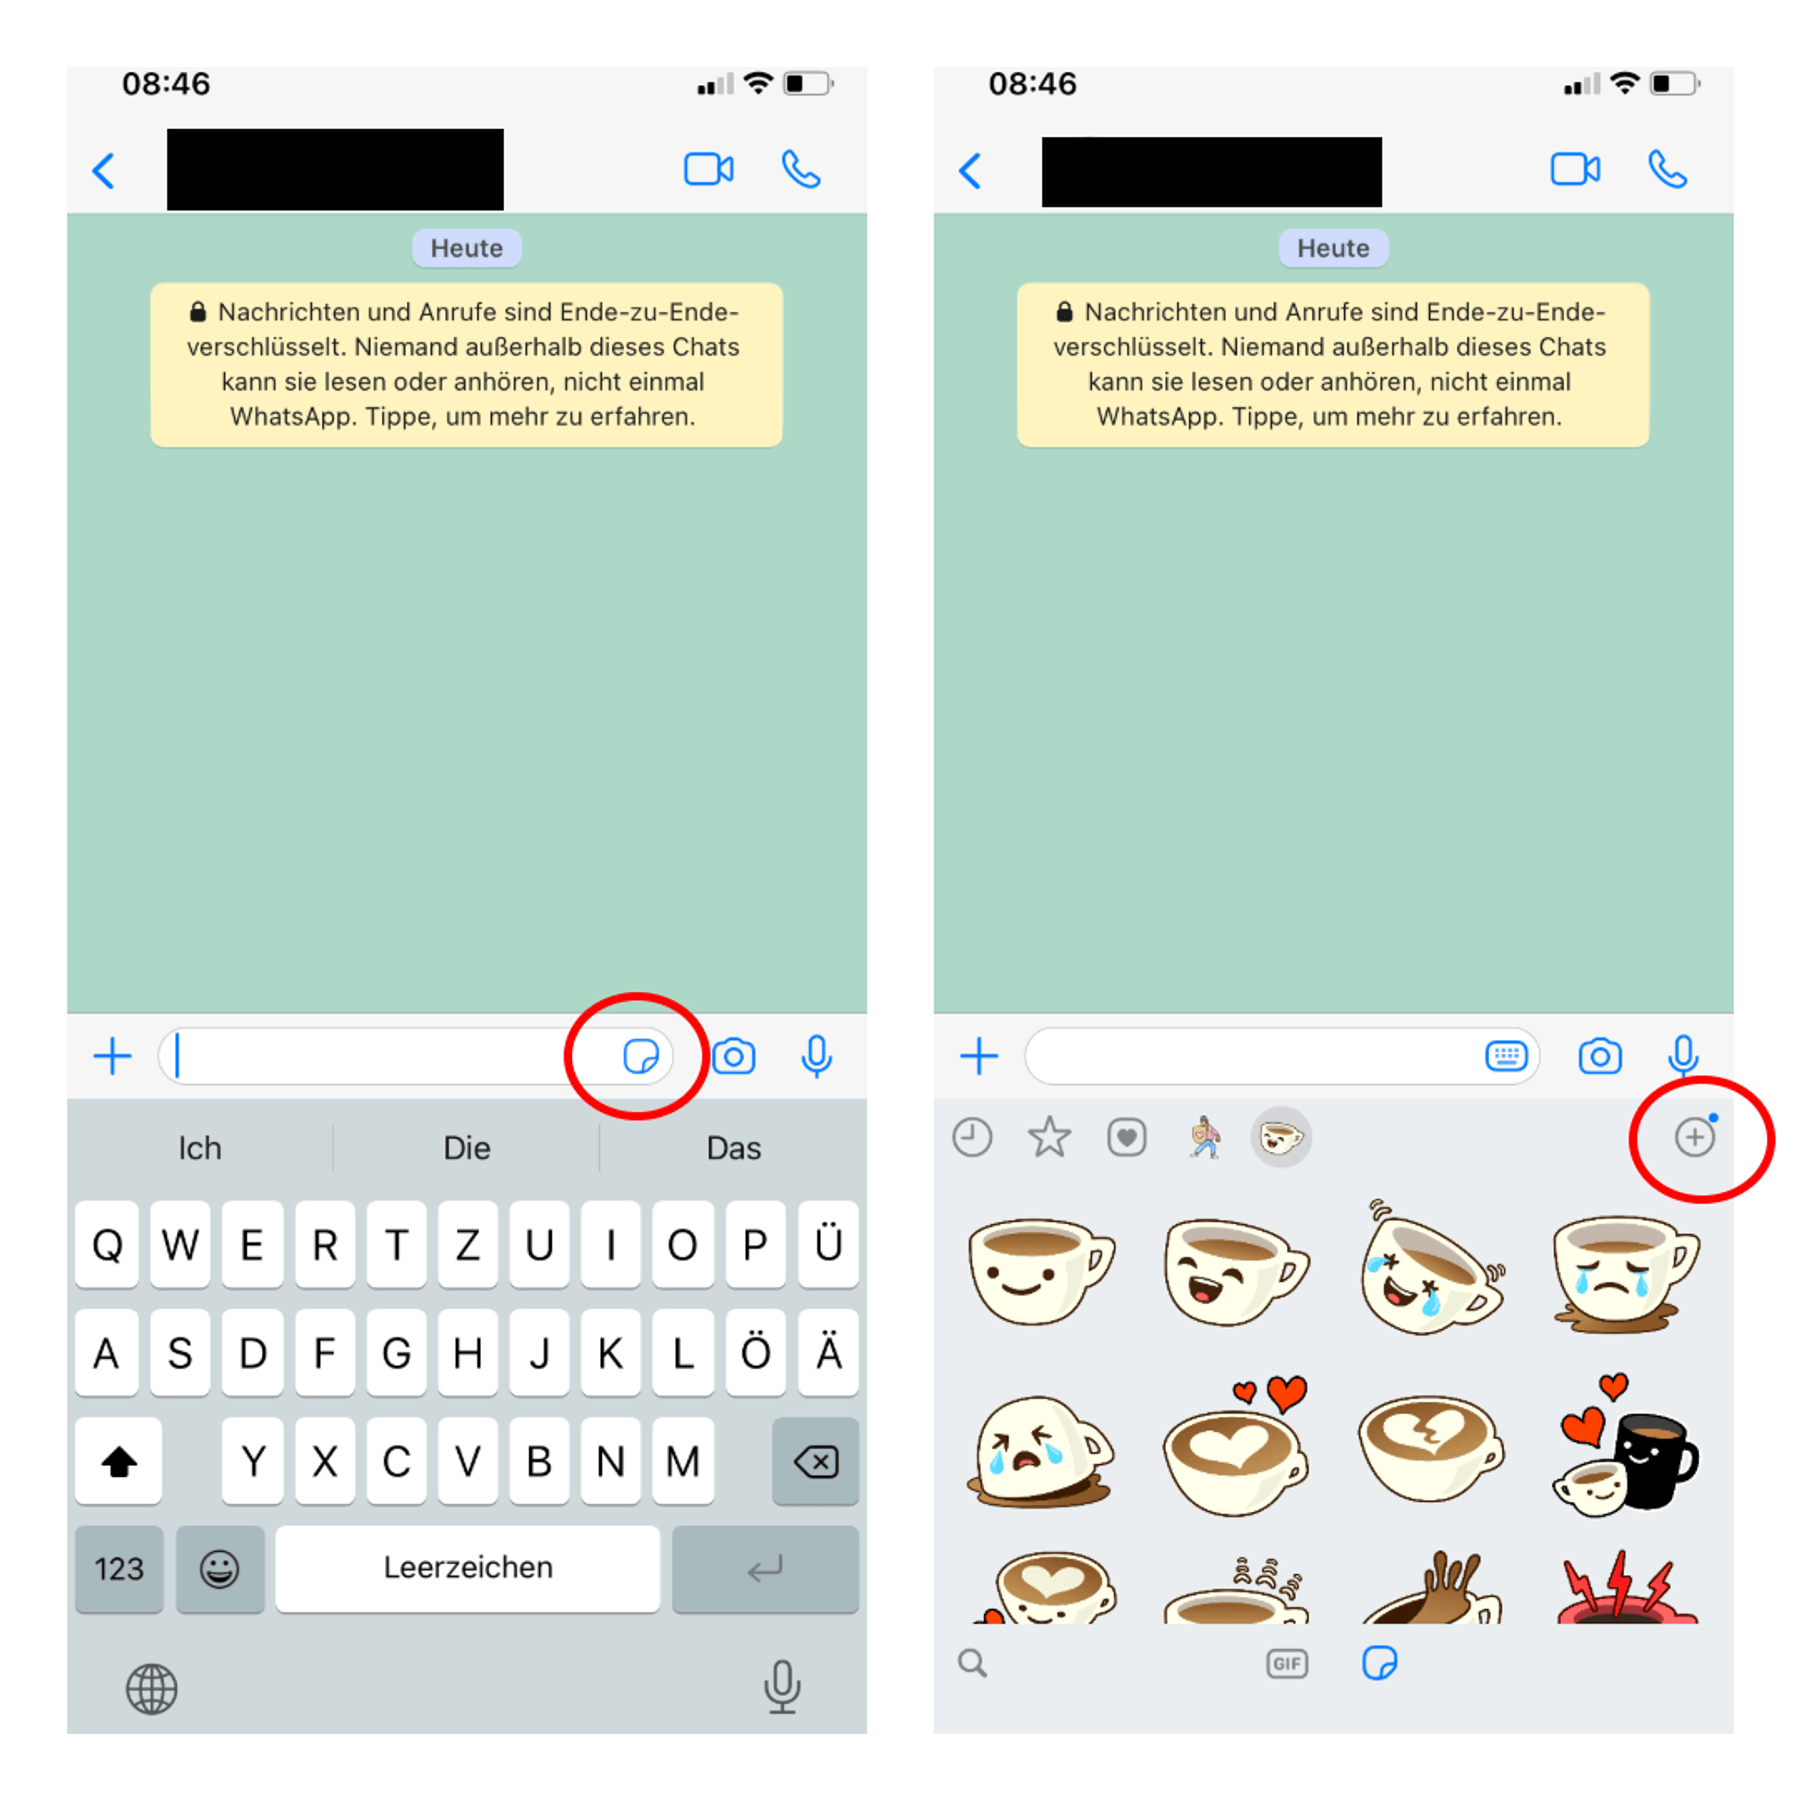 Whatsapp-Sticker erstellen: So geht's für iPhone und Android